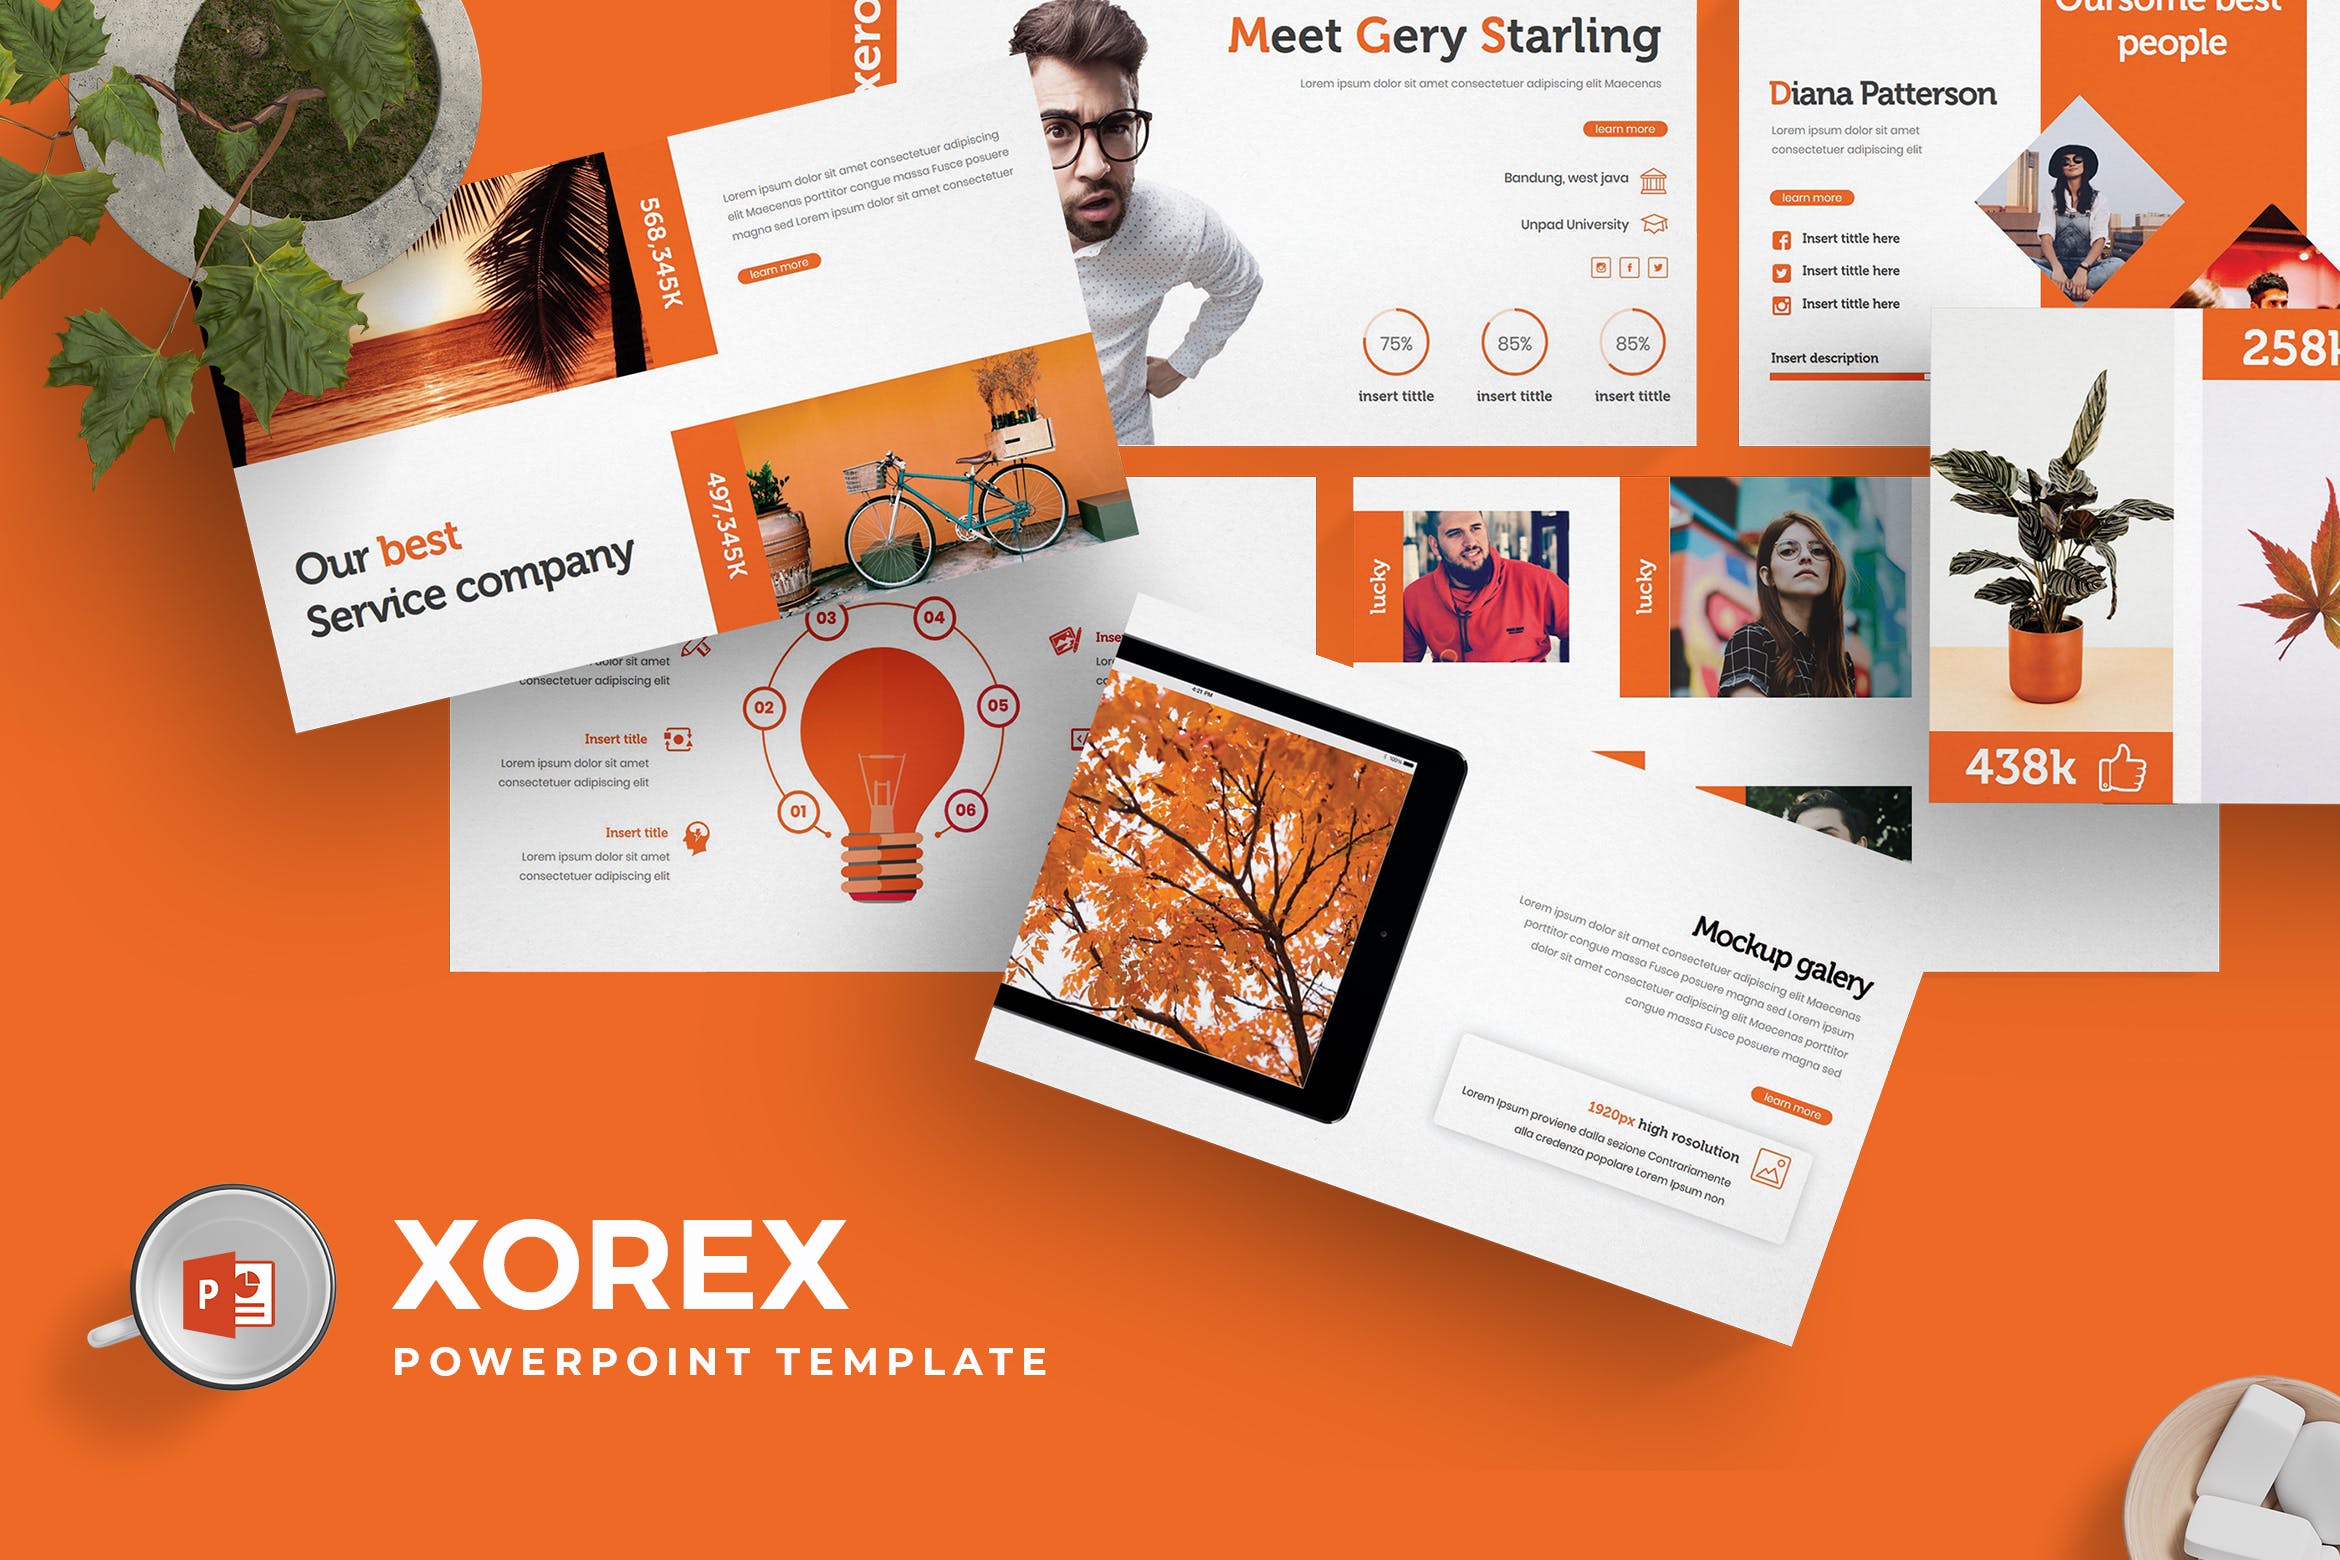 适用于各行业的公司介绍PPT幻灯片模板下载 Xorex – Powerpoint Template插图